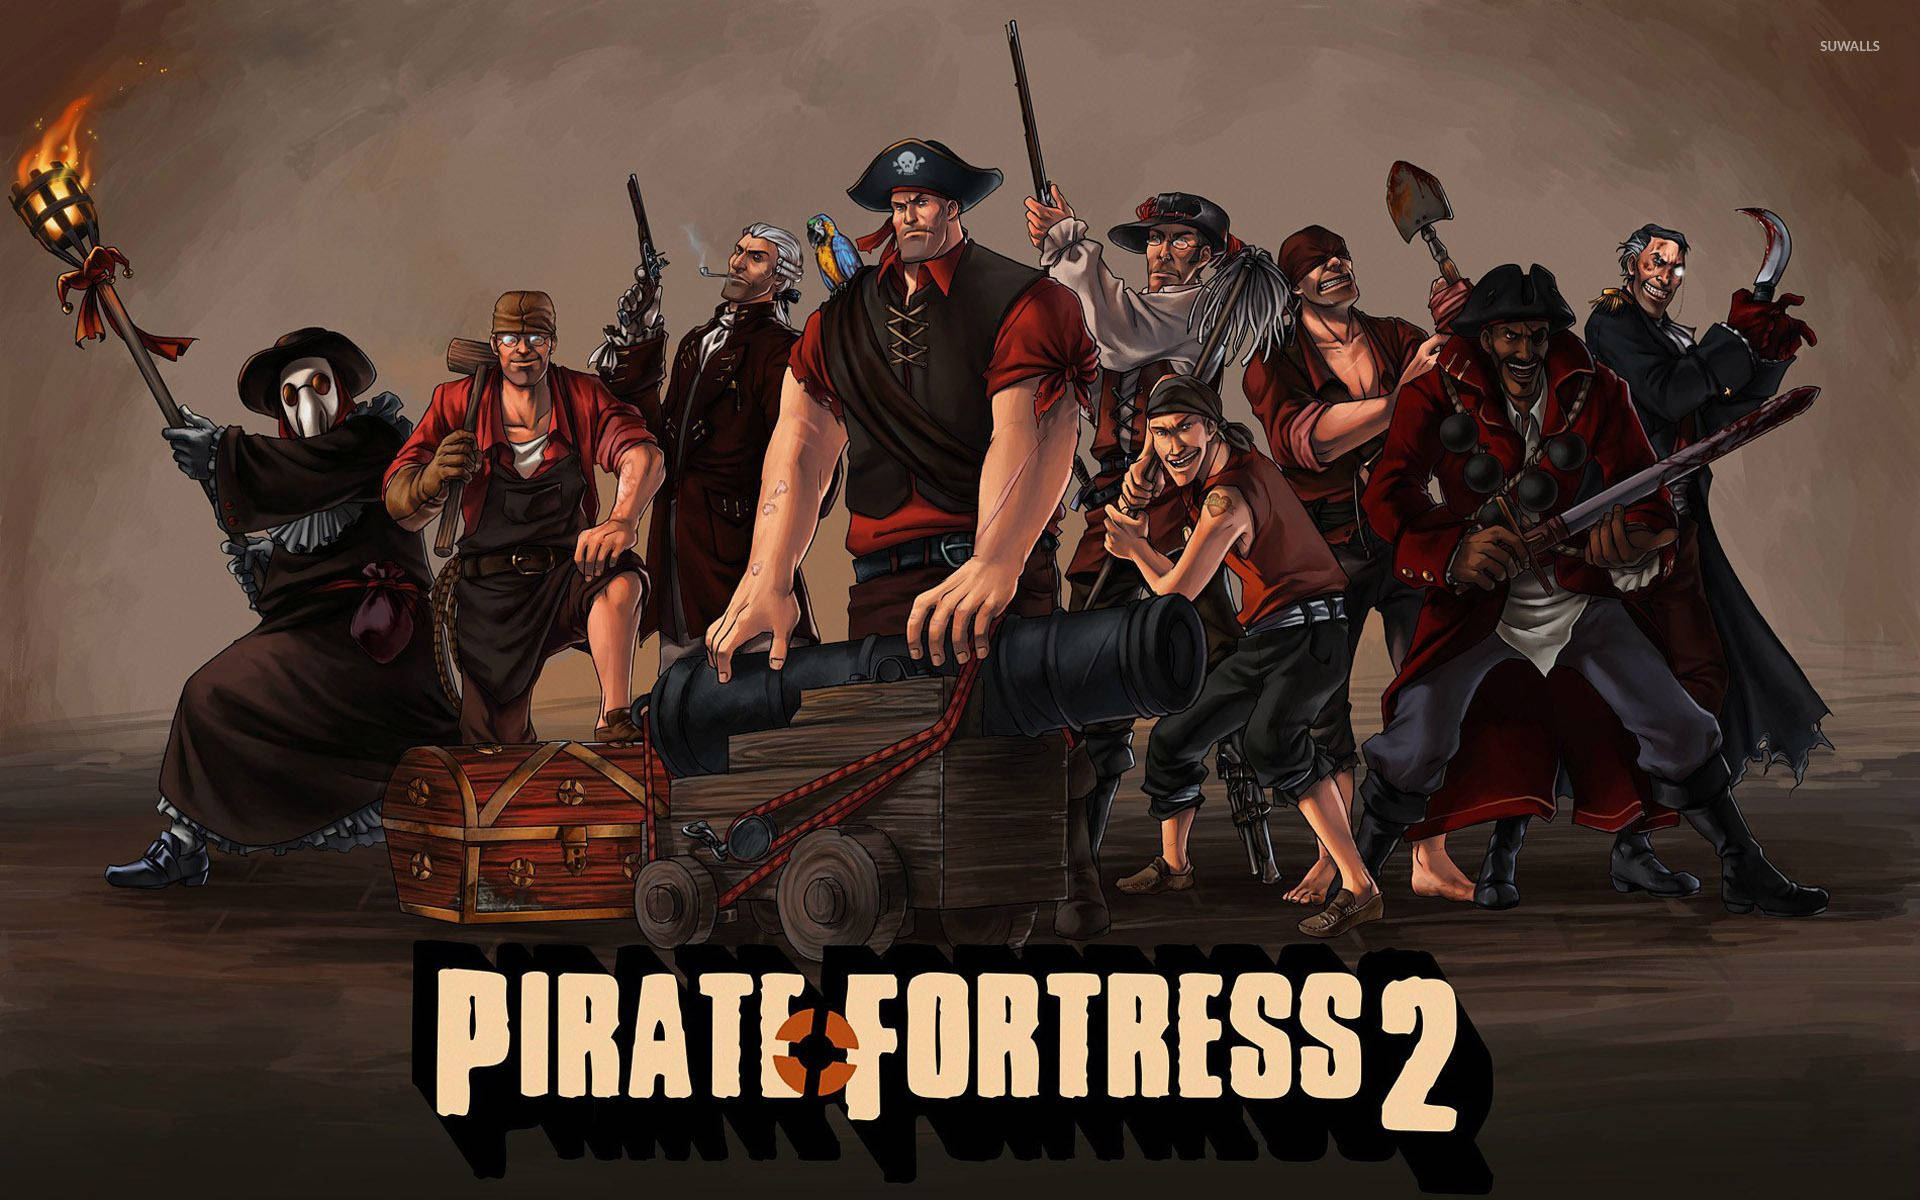 Team Fortress 2 Pirate Fanart